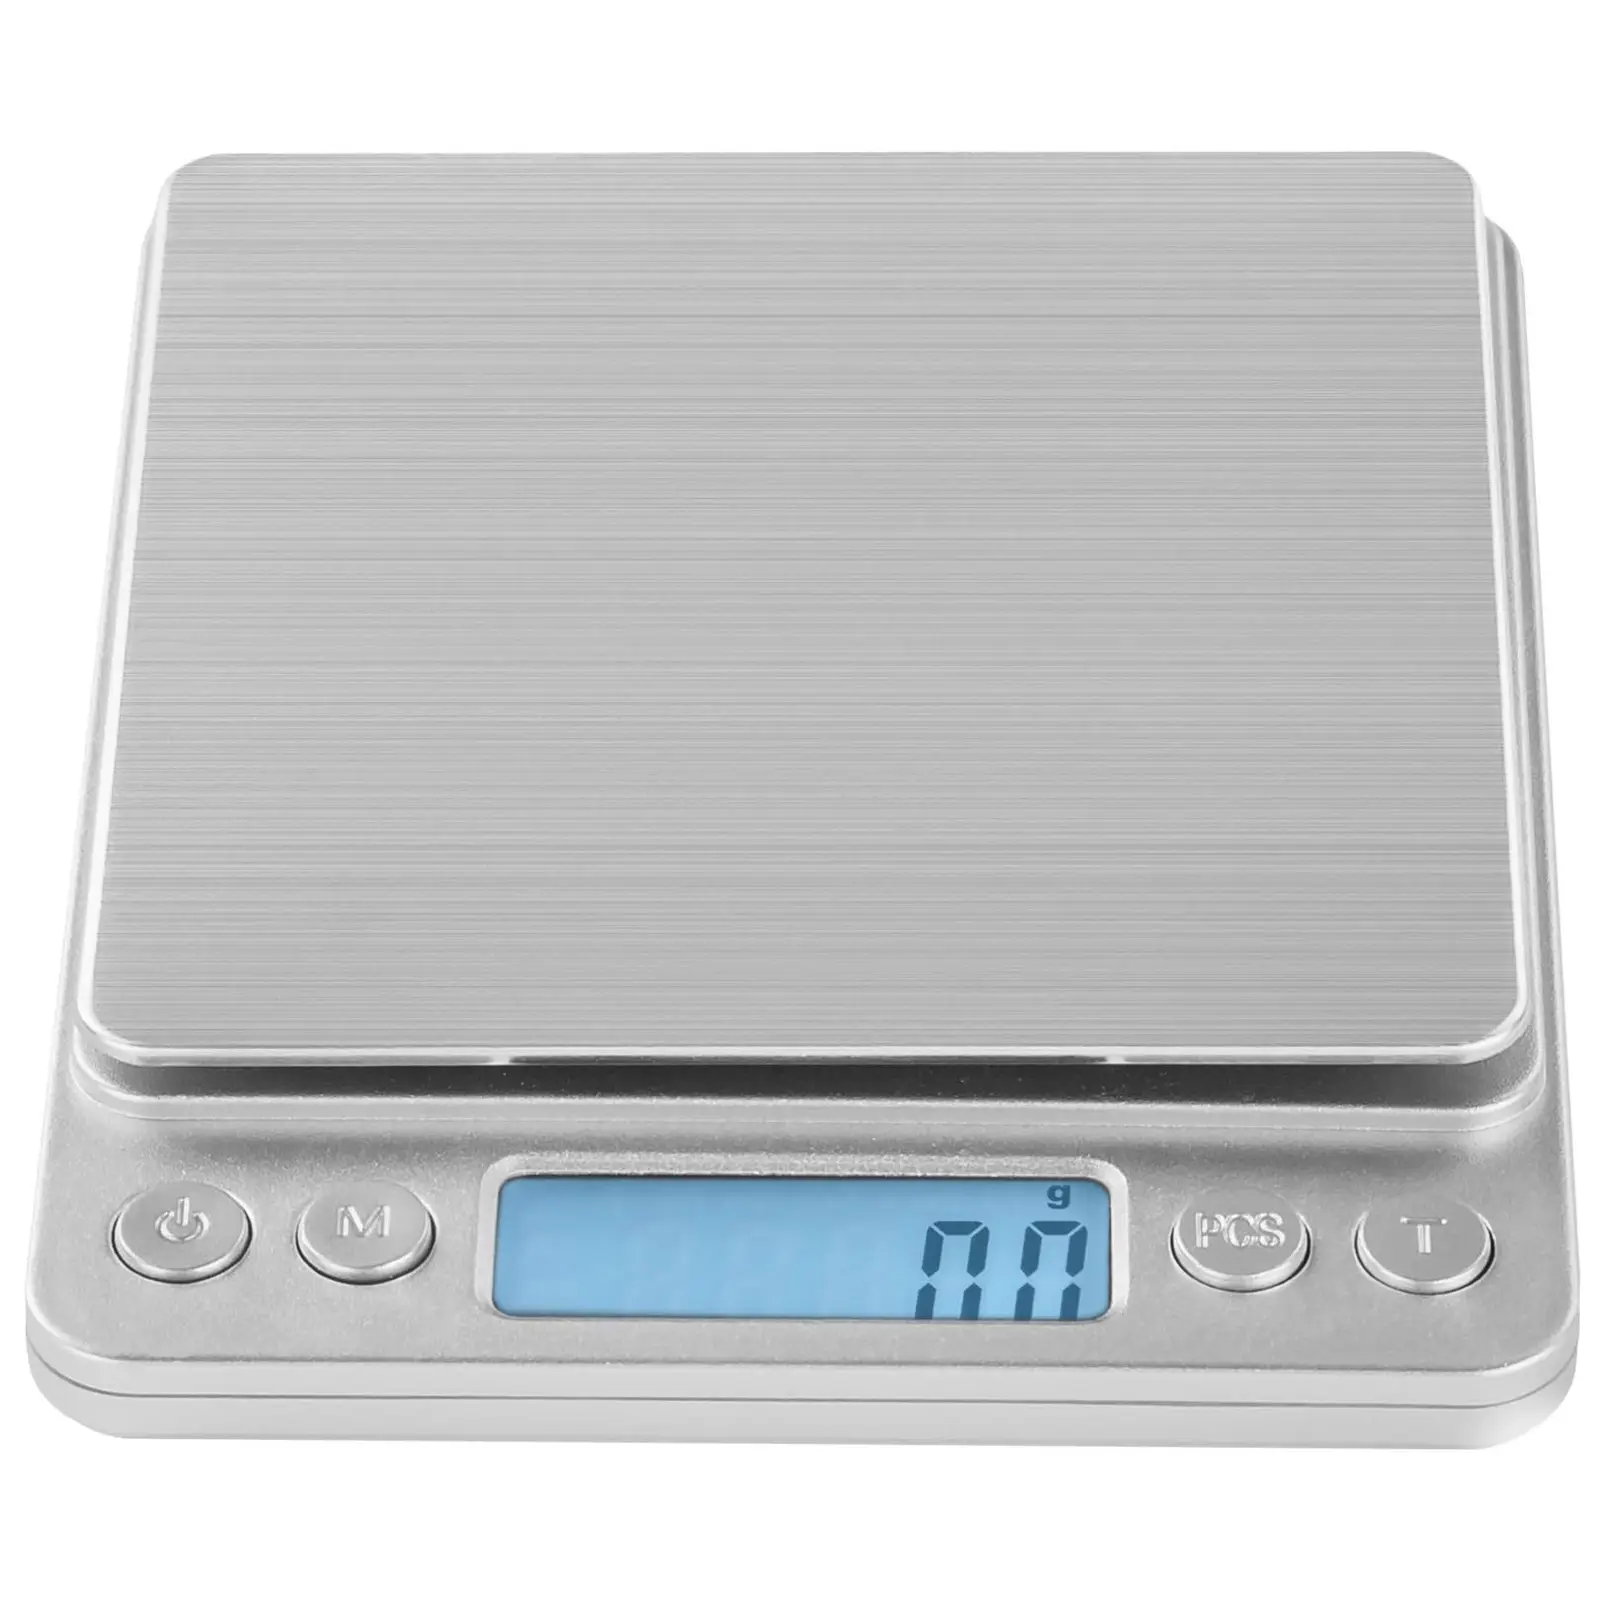 Digitaalinen pöytävaaka - 3 kg / 0,1g